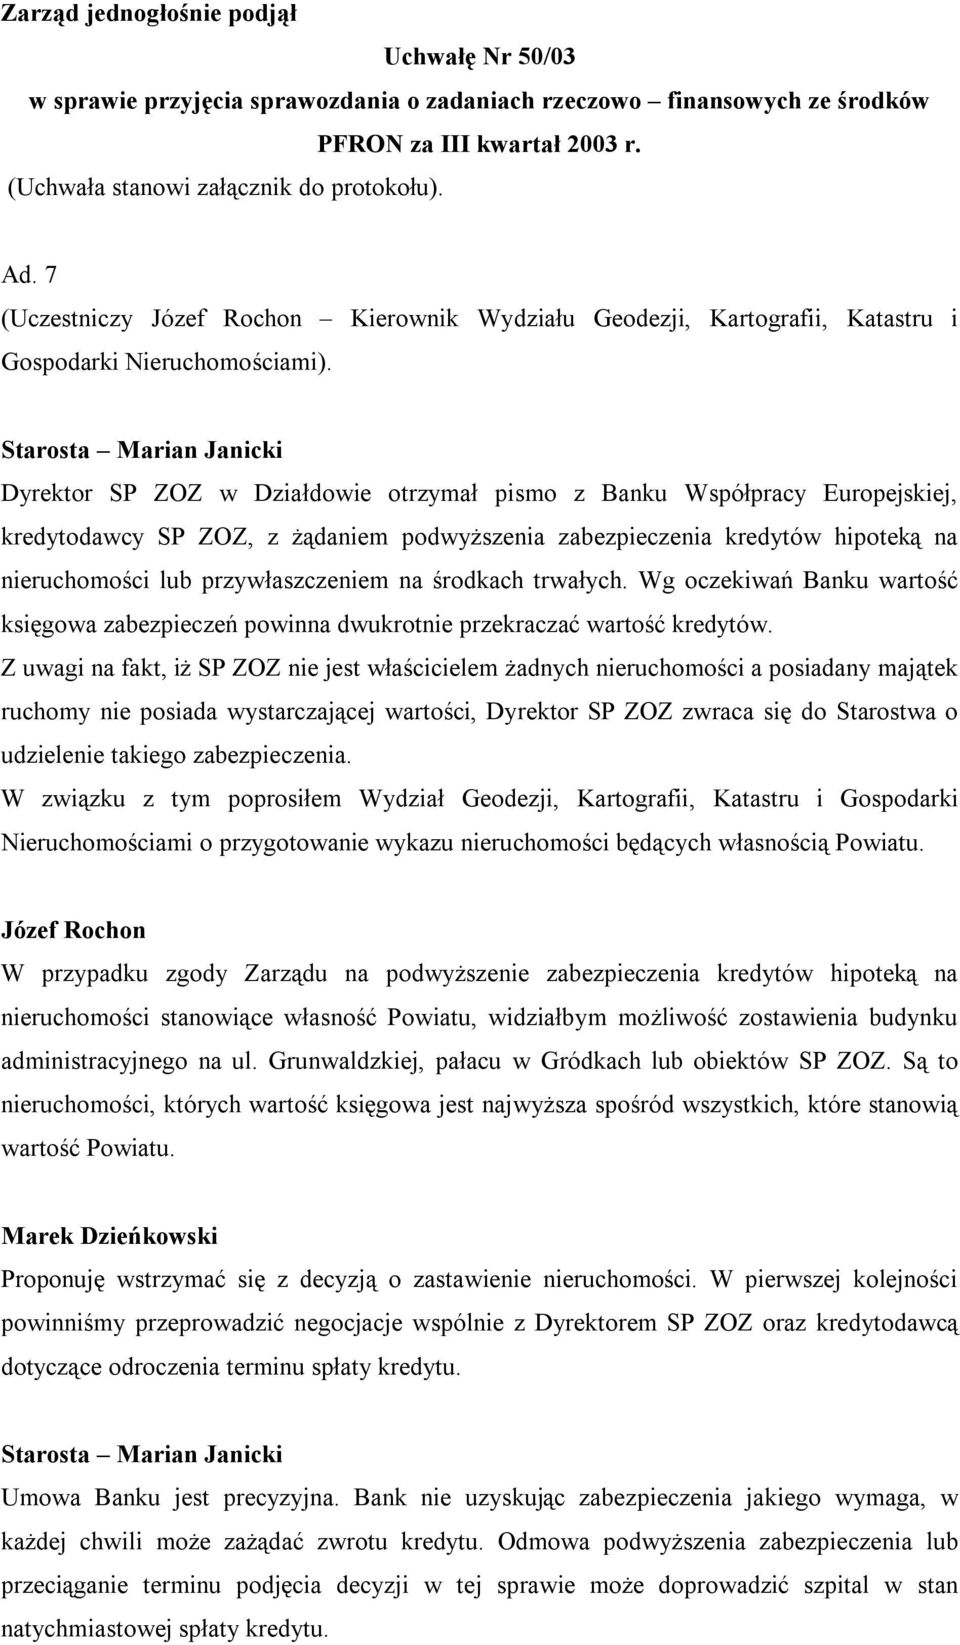 Starosta Marian Janicki Dyrektor SP ZOZ w Działdowie otrzymał pismo z Banku Współpracy Europejskiej, kredytodawcy SP ZOZ, z żądaniem podwyższenia zabezpieczenia kredytów hipoteką na nieruchomości lub